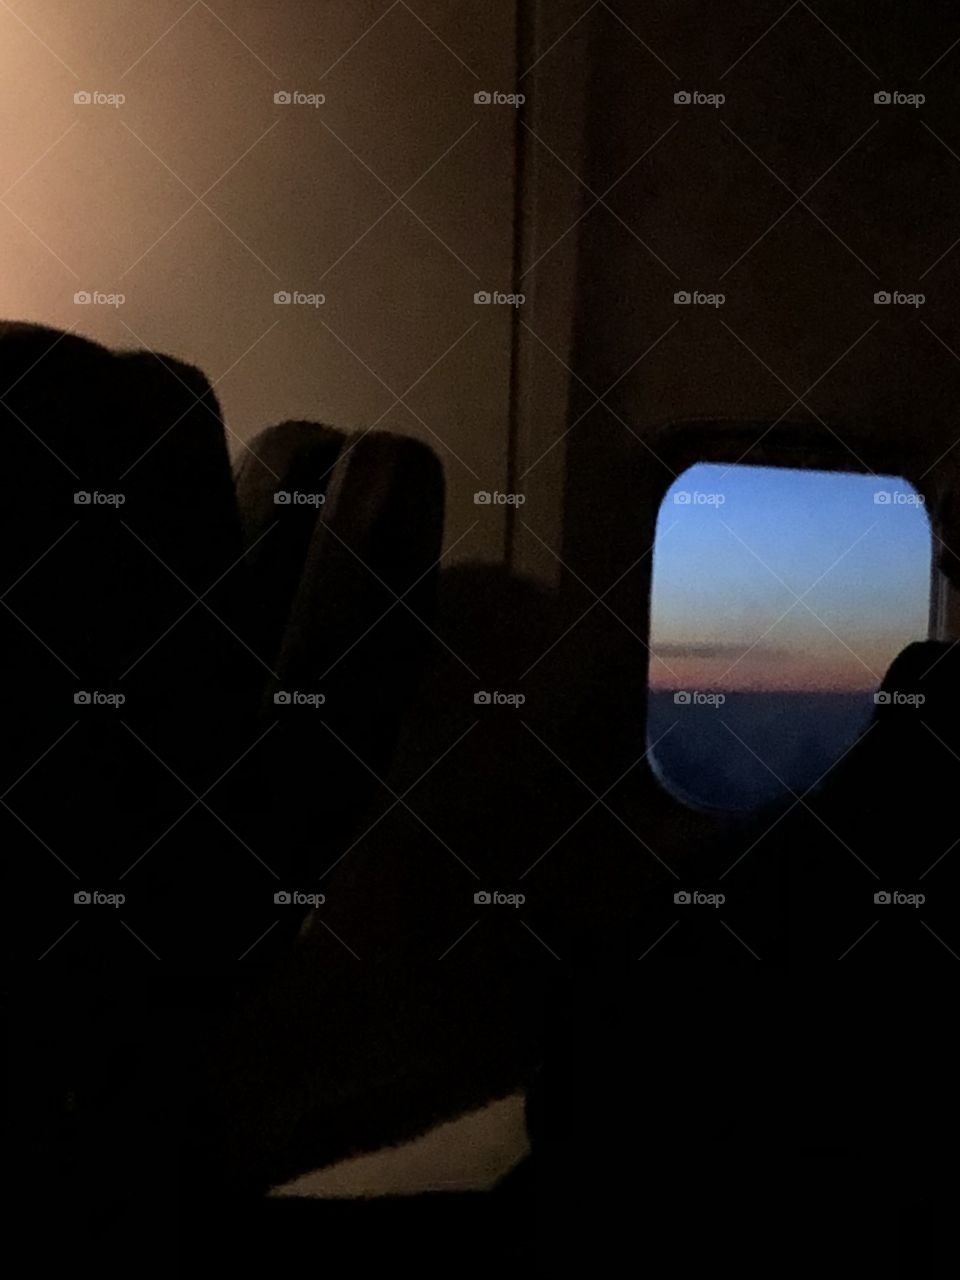 Dawn on an airplane